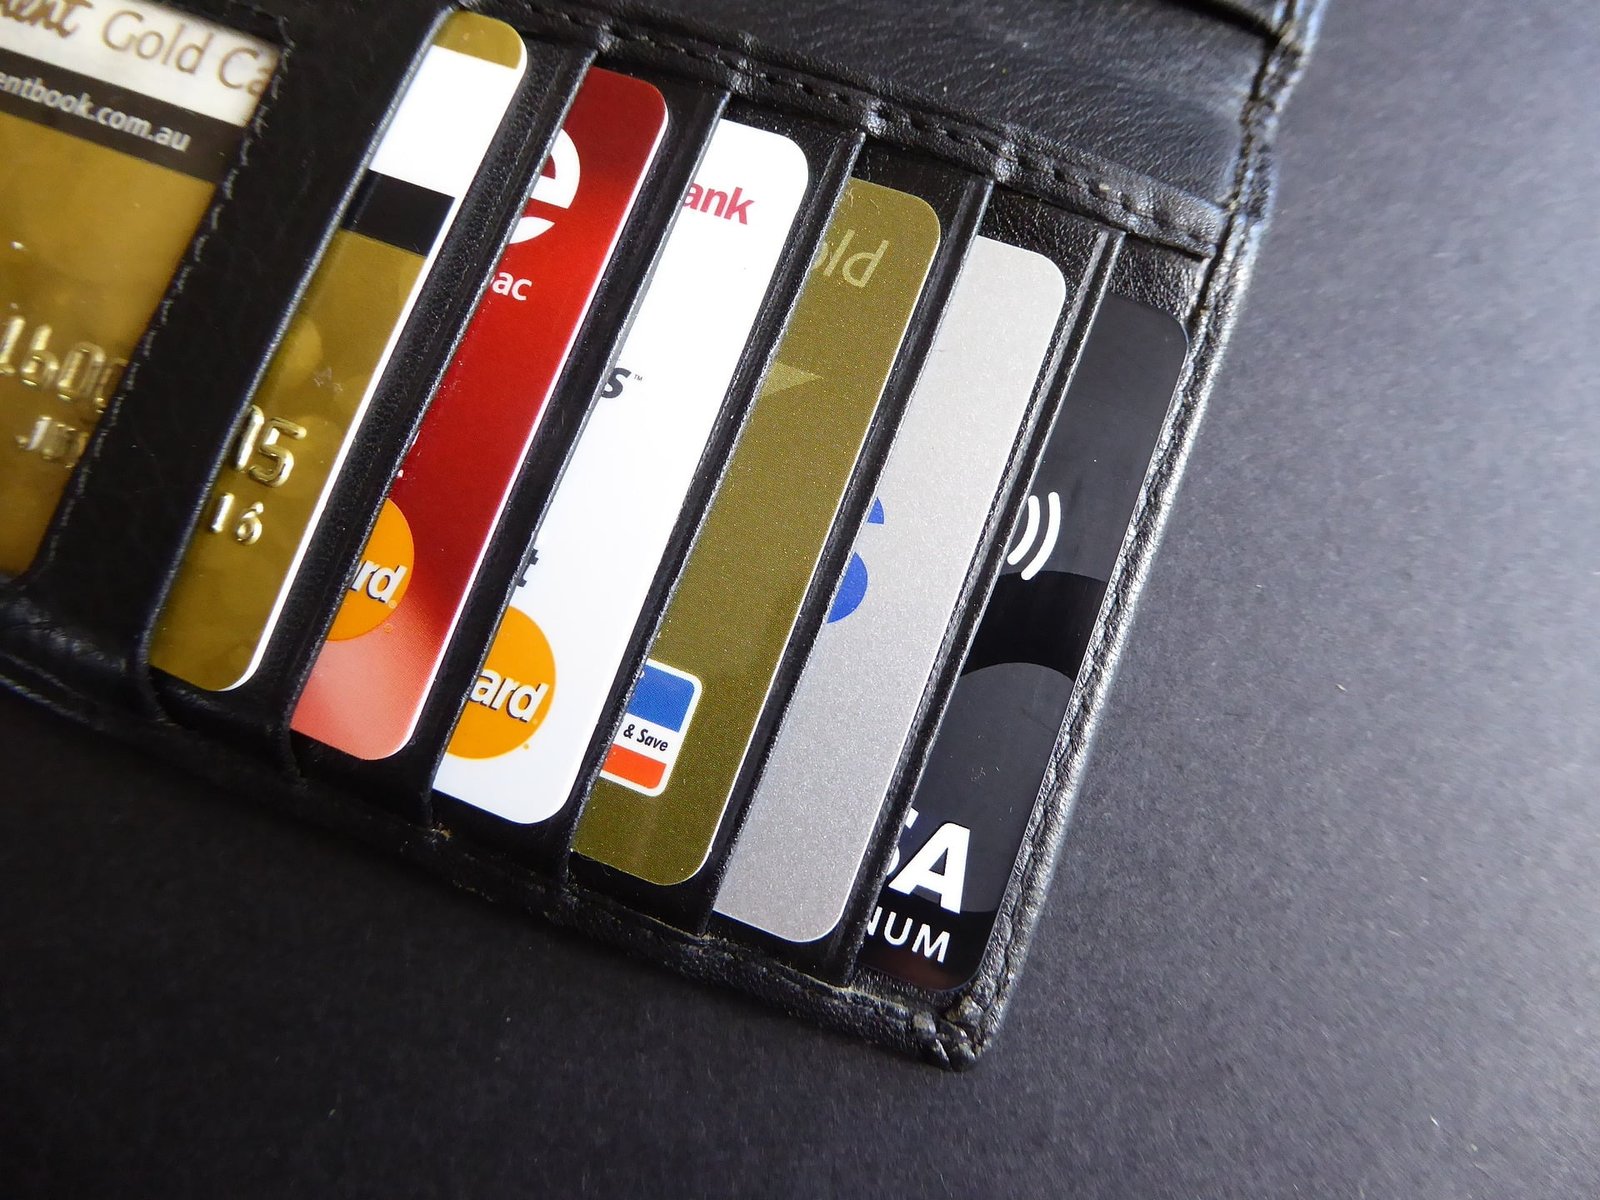 Tipos de cartão de crédito